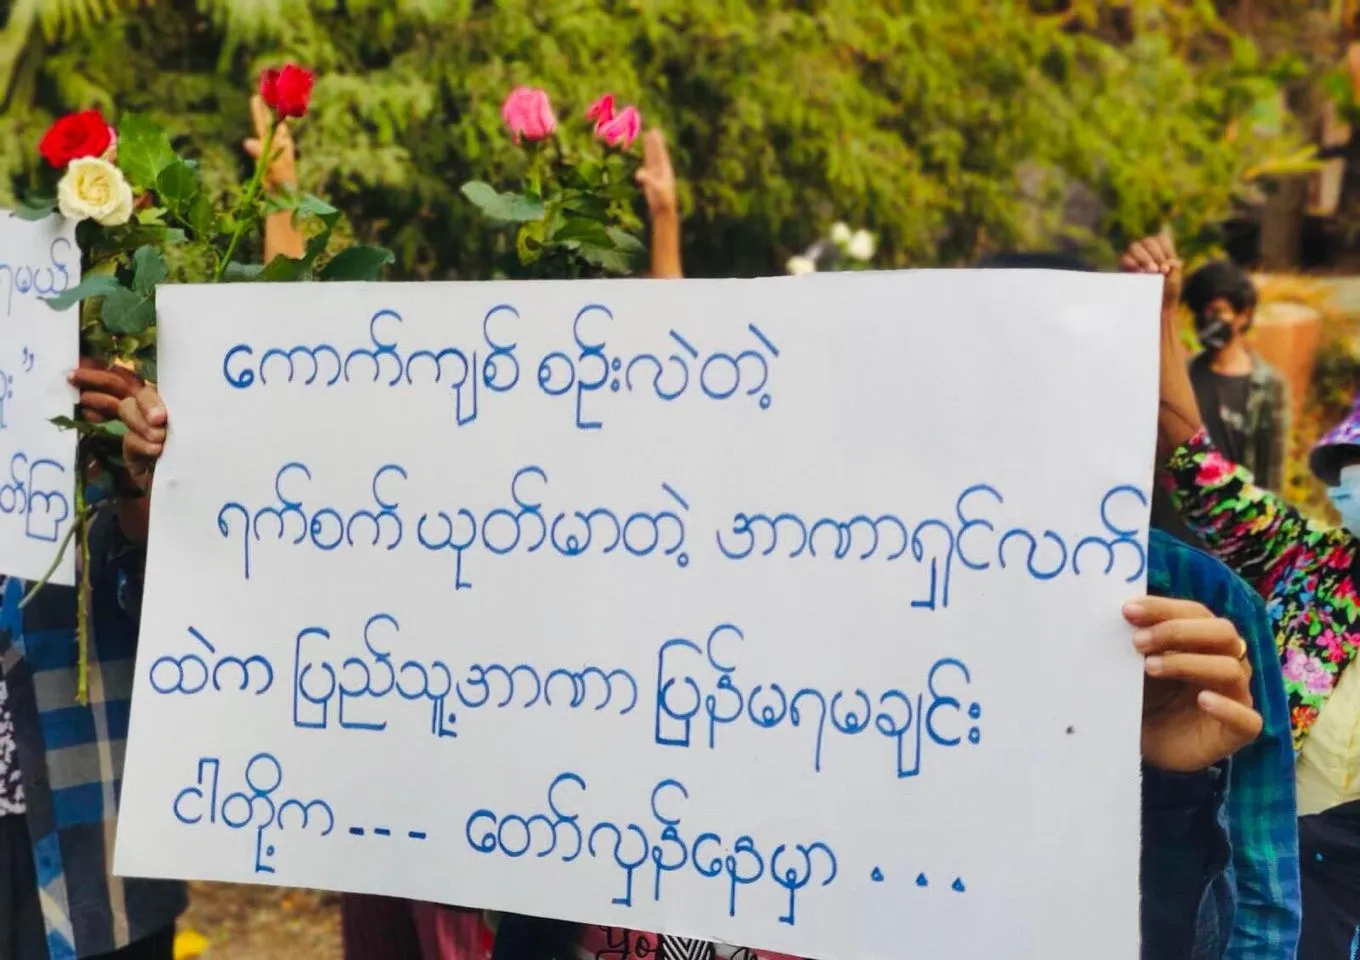 “ထောင်ထဲမှာတော့သေနေပြီ၊မင်းတို့တွေကသွေးအေးတုန်းလား” ကလေးမြို့ ပင်မသပိတ်ရဲ့ ယနေ့မြင်ကွင်း